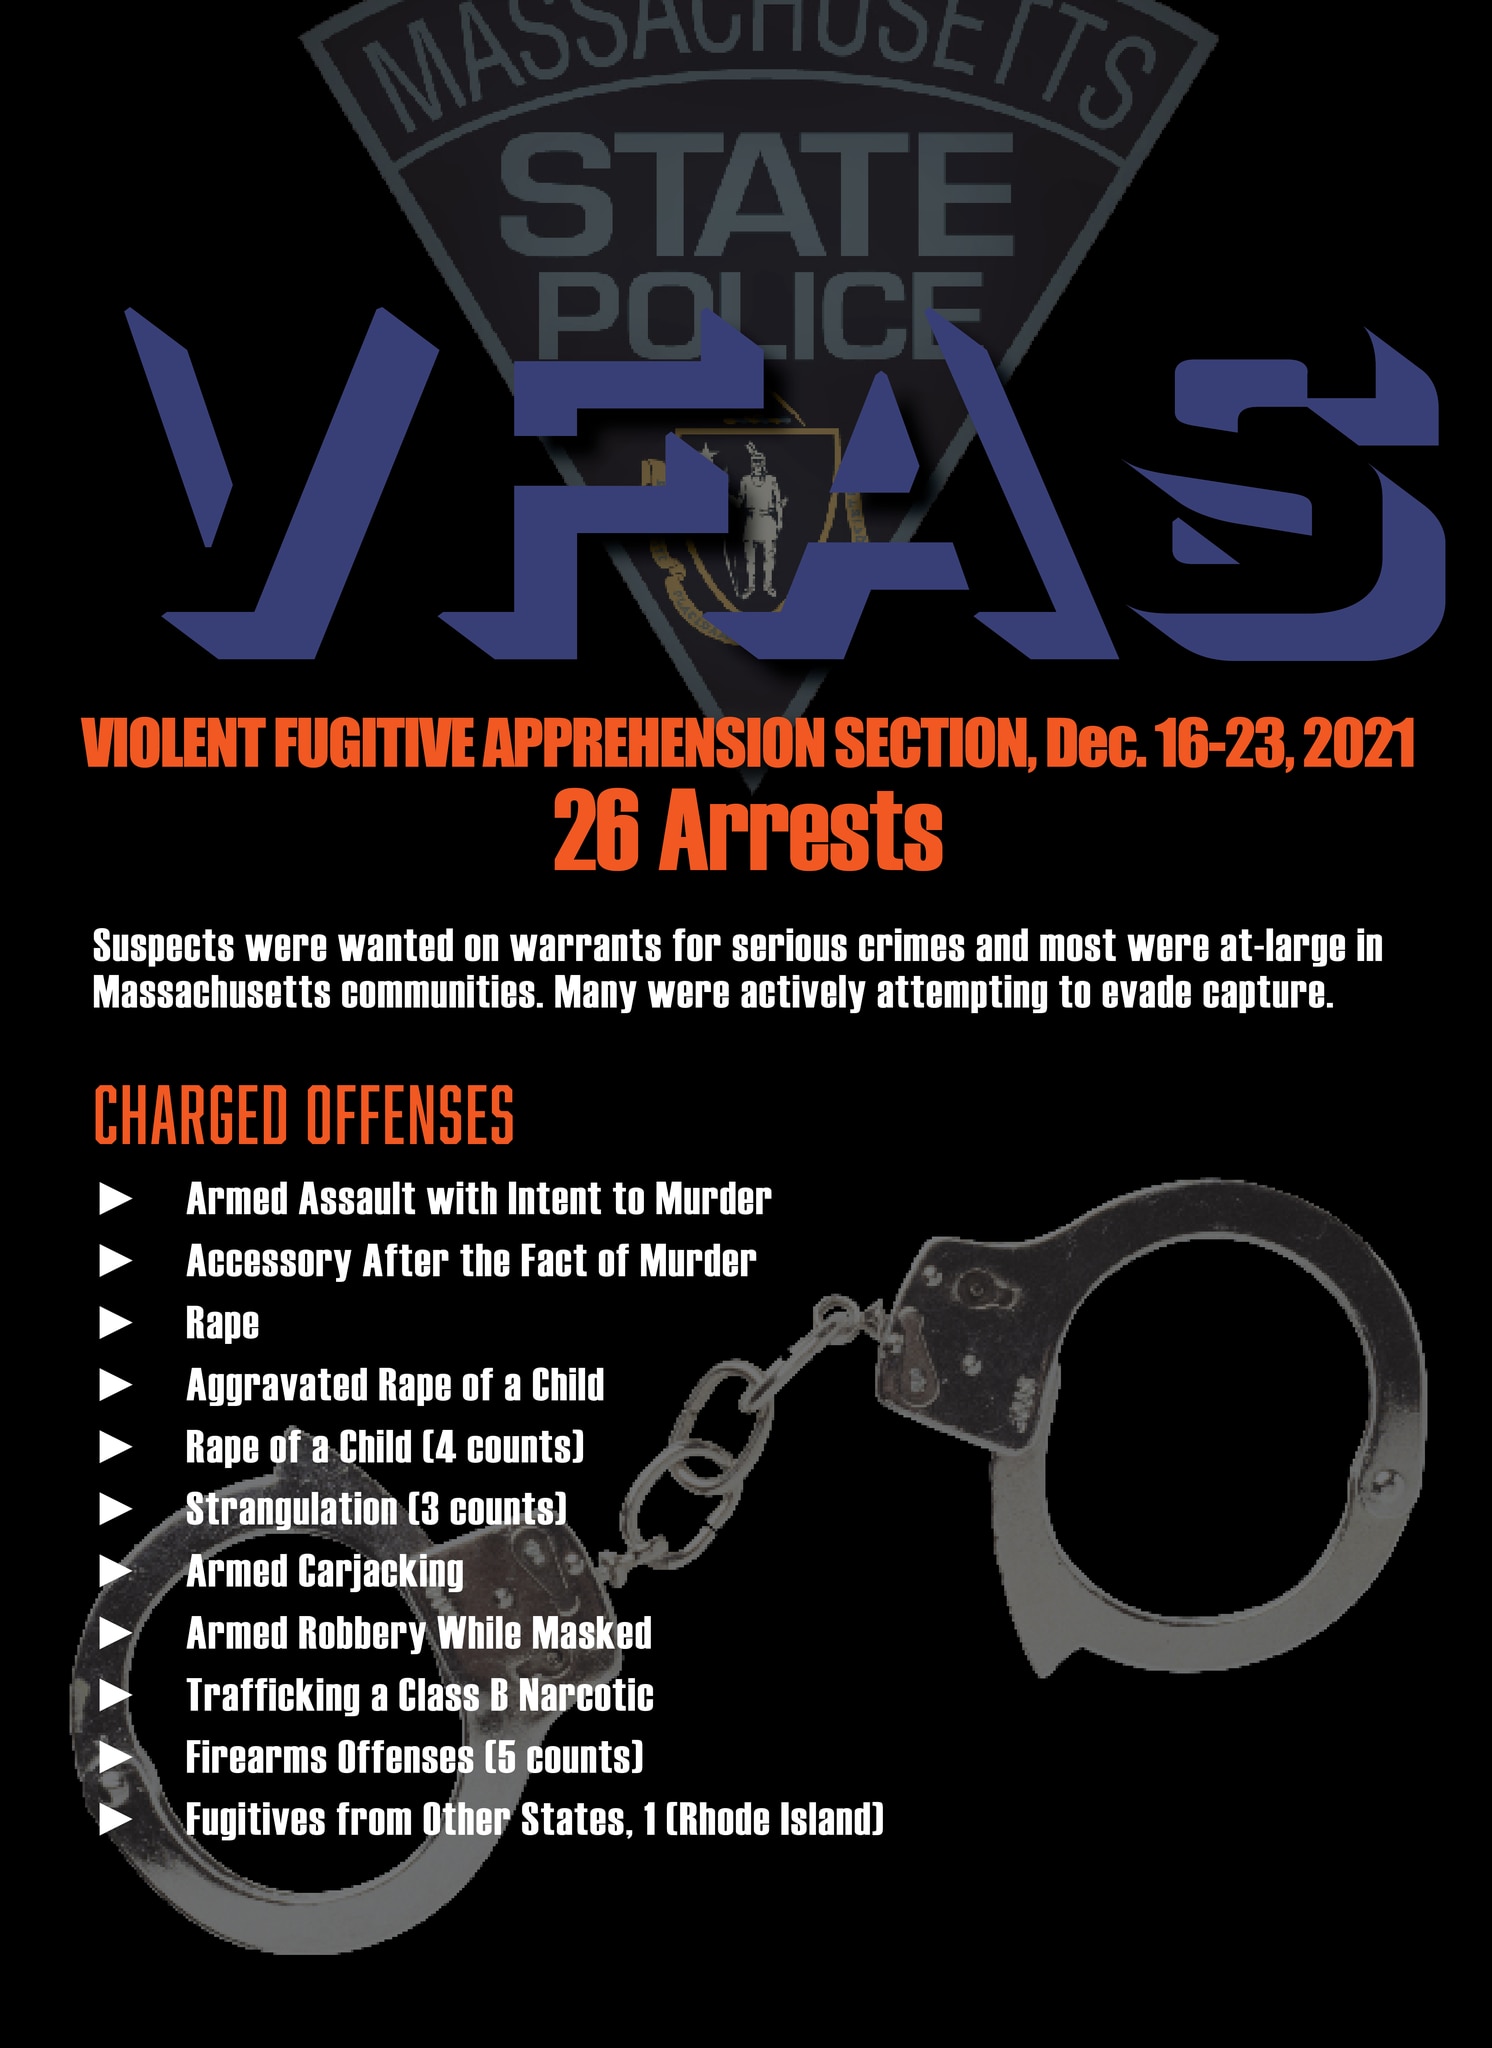 Massachusetts State Police VFAS December 16-23, 2021